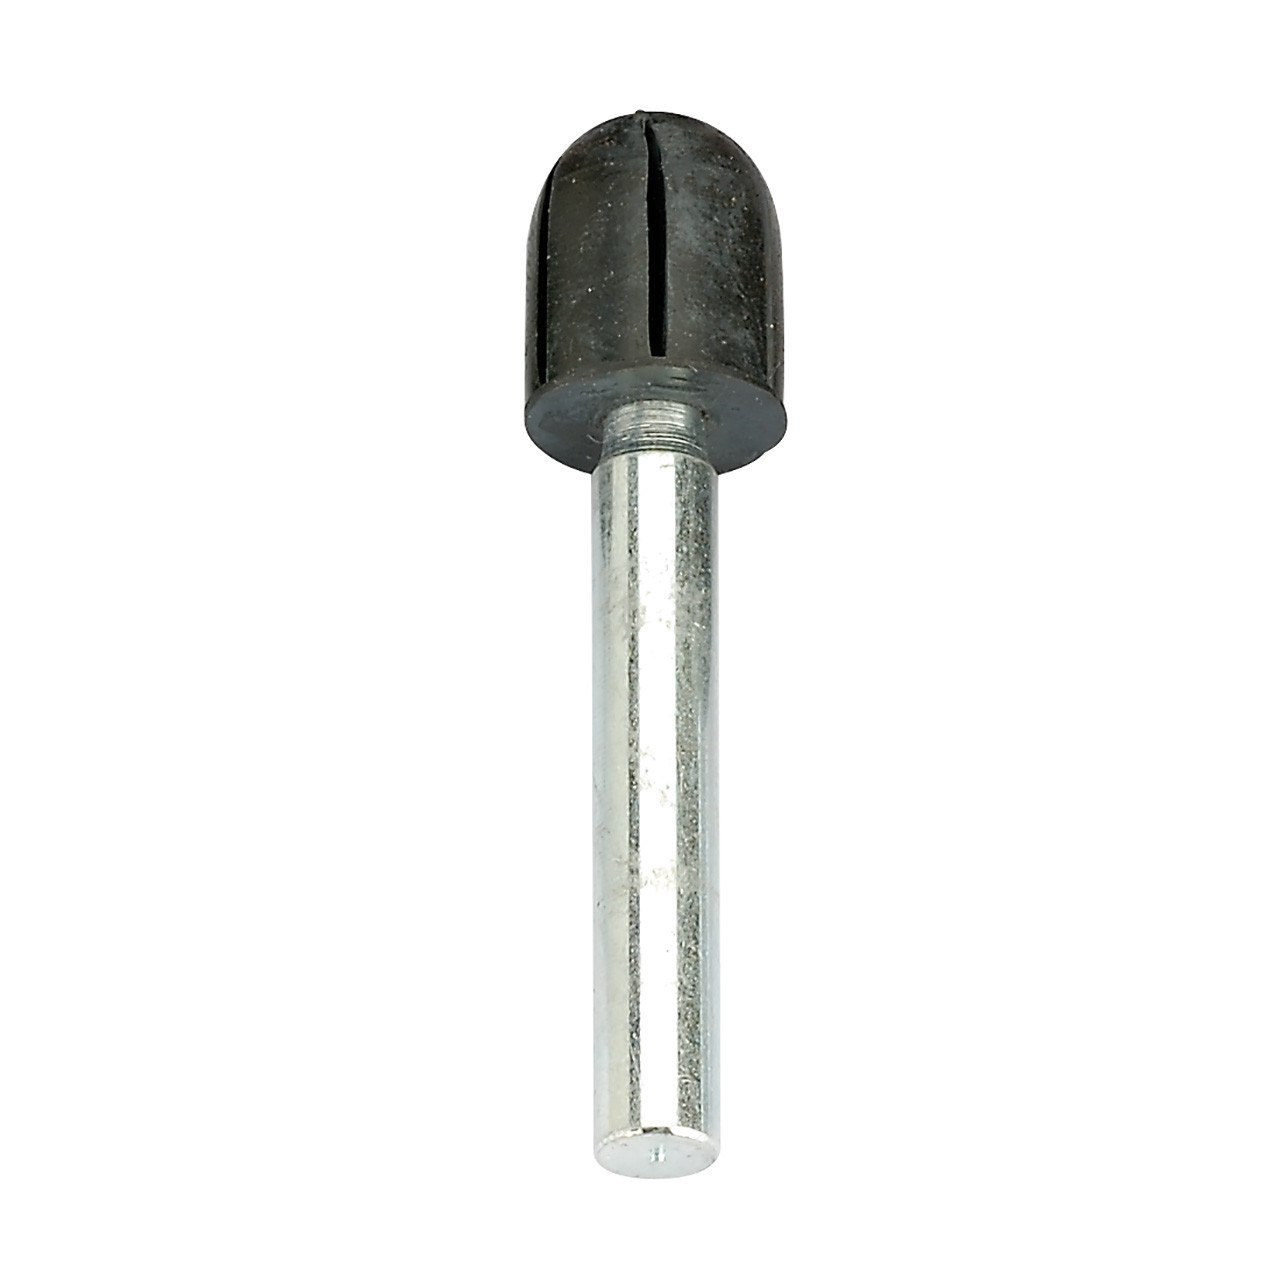 Abrasive Cap Holder - Round Top 1/2" x 11/16", 1/4" Shank